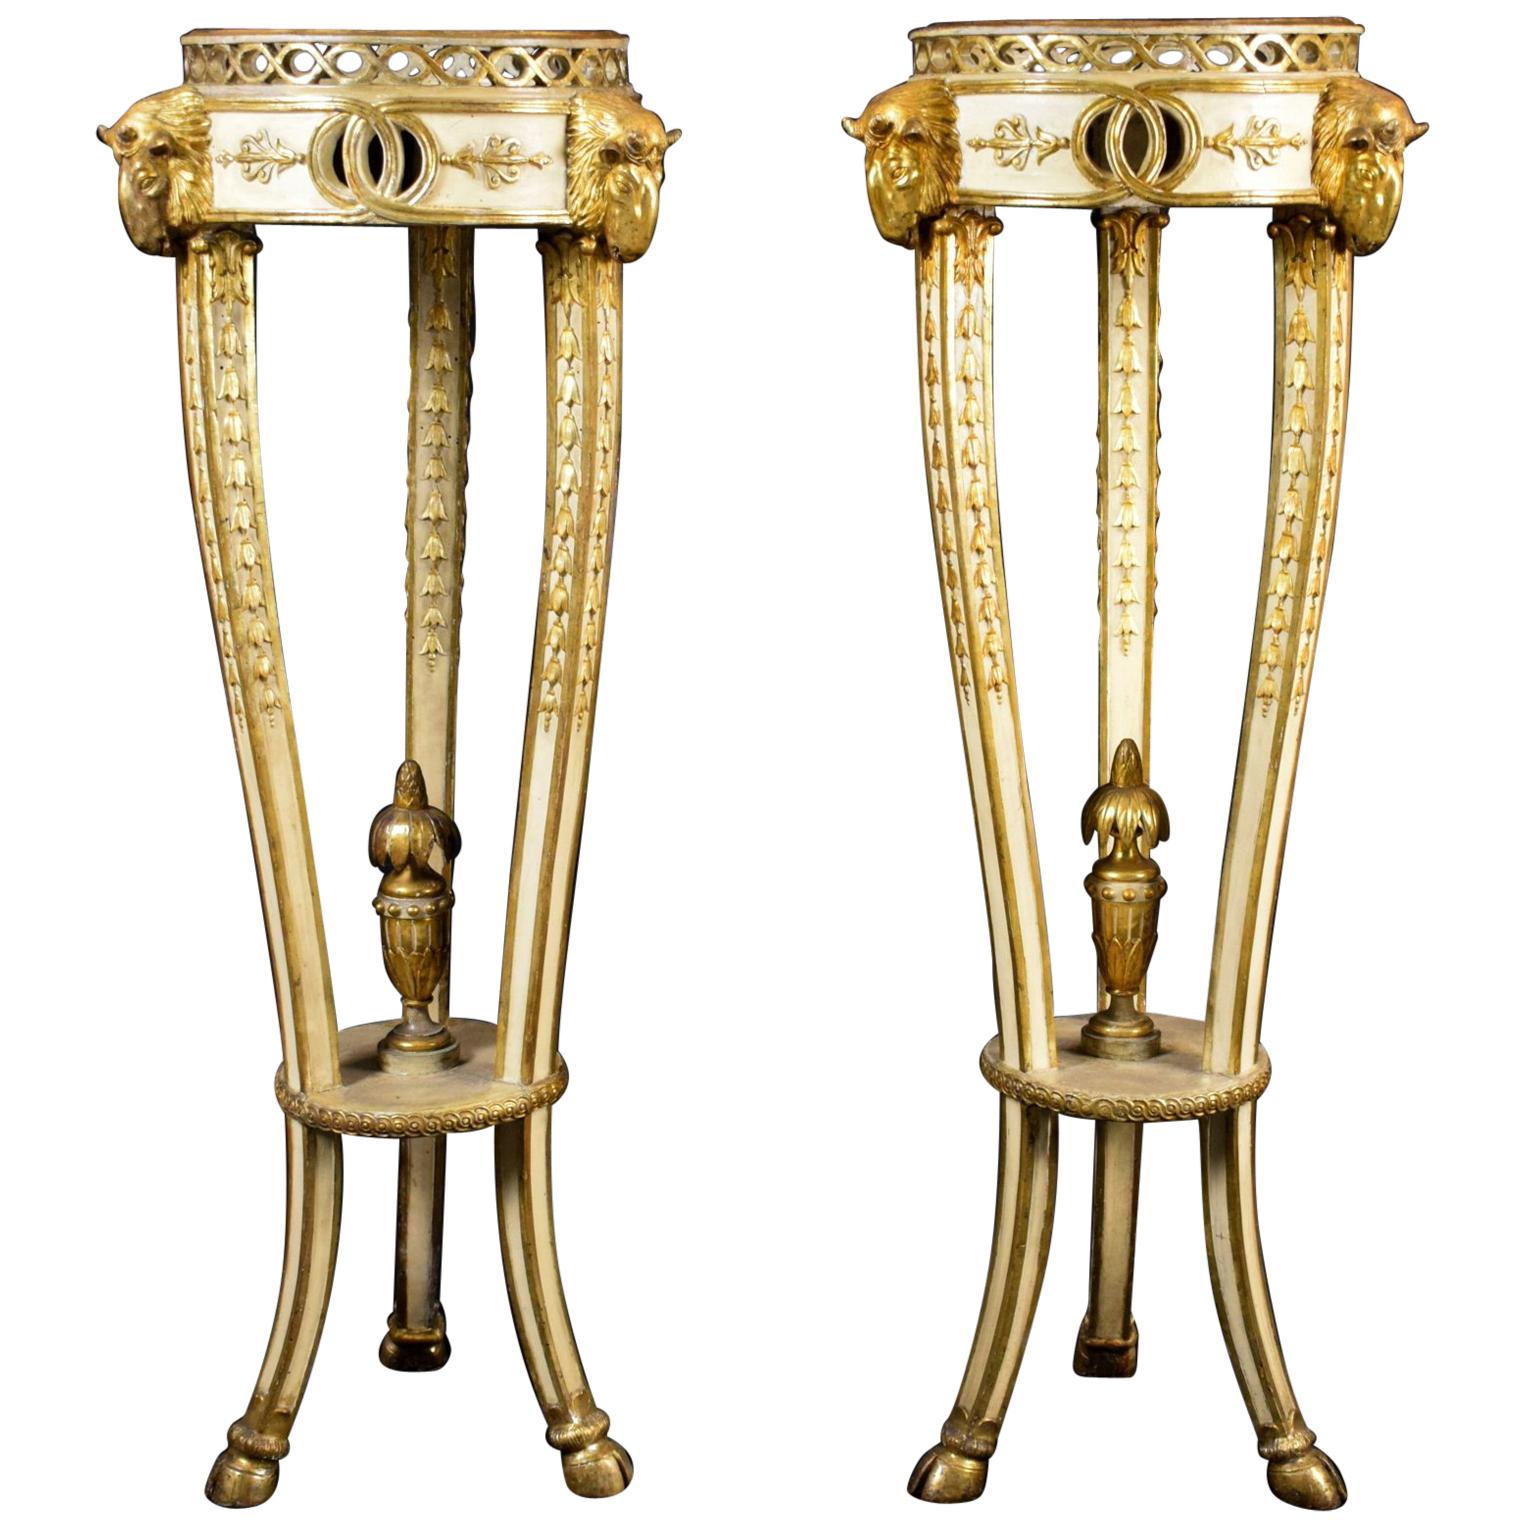 Paire de guéridons italiens du 18ème siècle de style néoclassique en bois laqué et doré sculpté